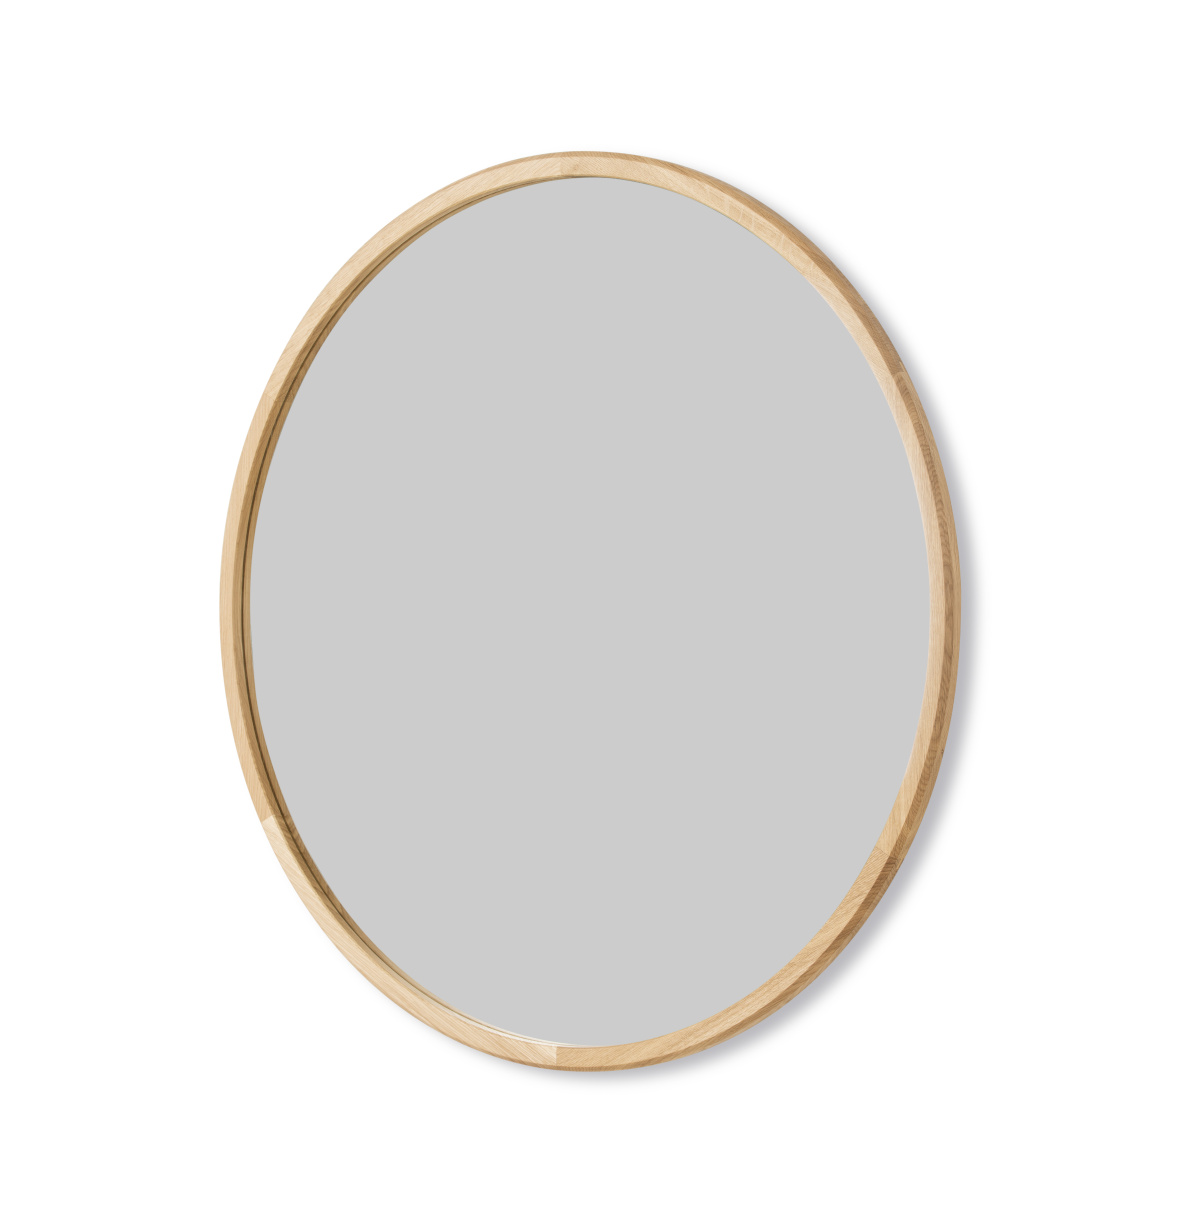 Fredericia Silhouette Spiegel Durchmesser 100 cm eiche hell geölt